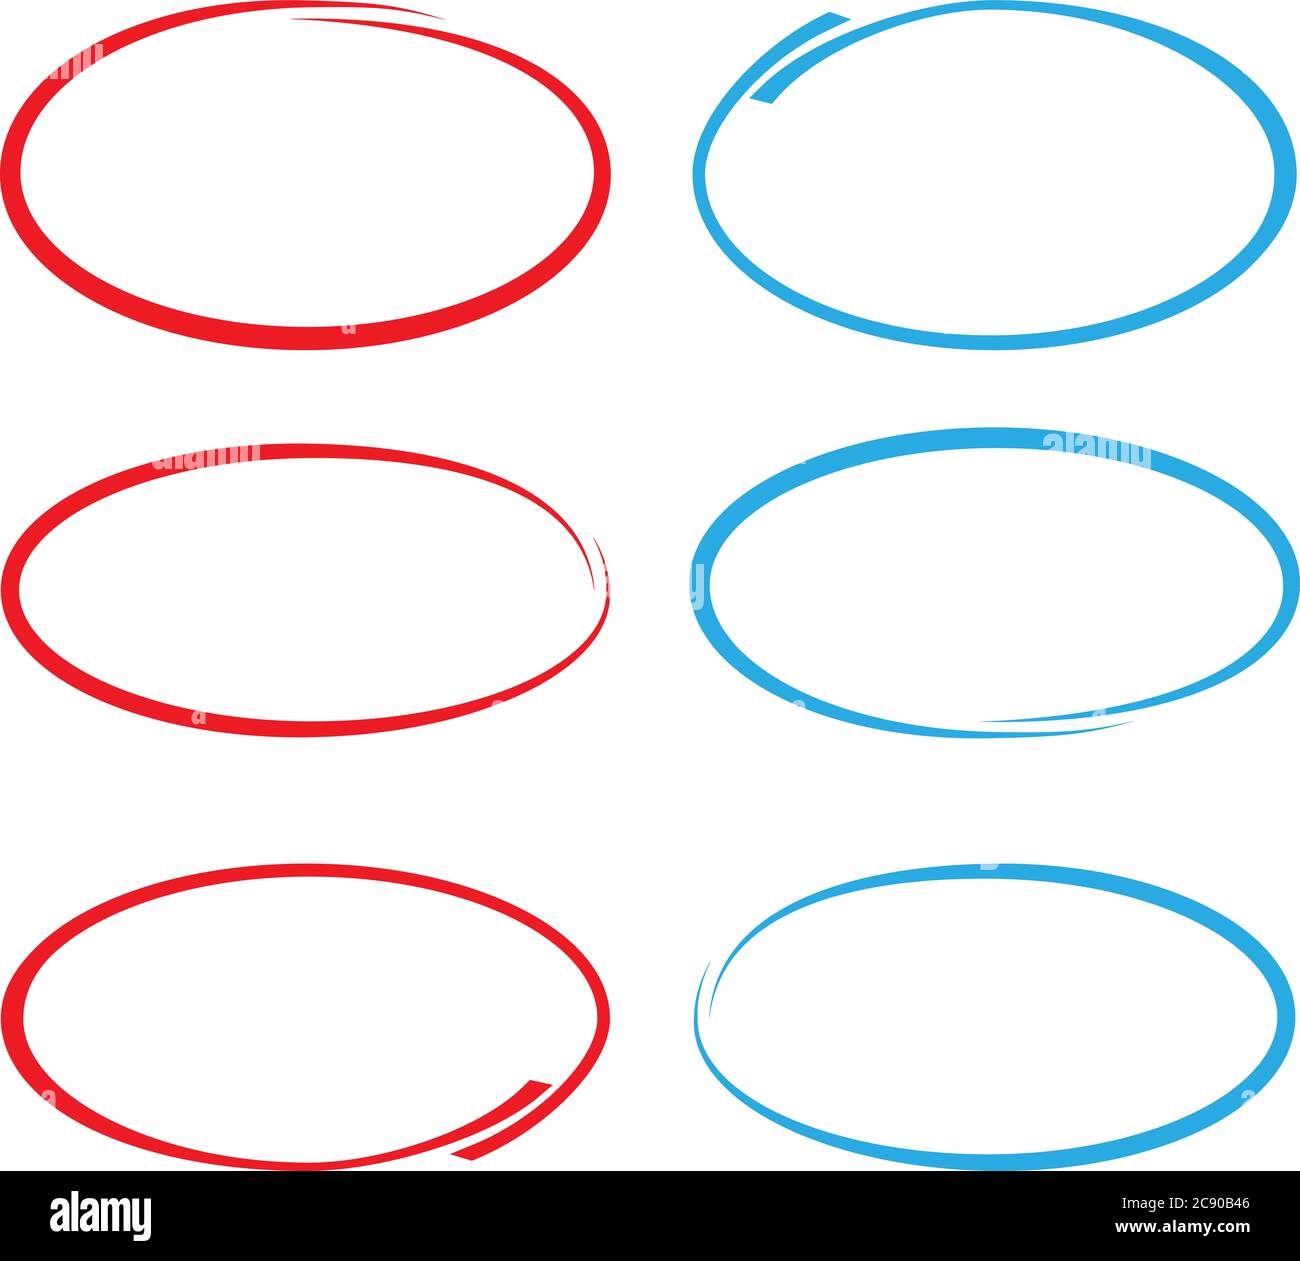 Rote und blaue kreisförmige Kritzeleien oder gezeichnete Kreise zur Markierung isoliert auf weißer Vektorgrafik Stock Vektor